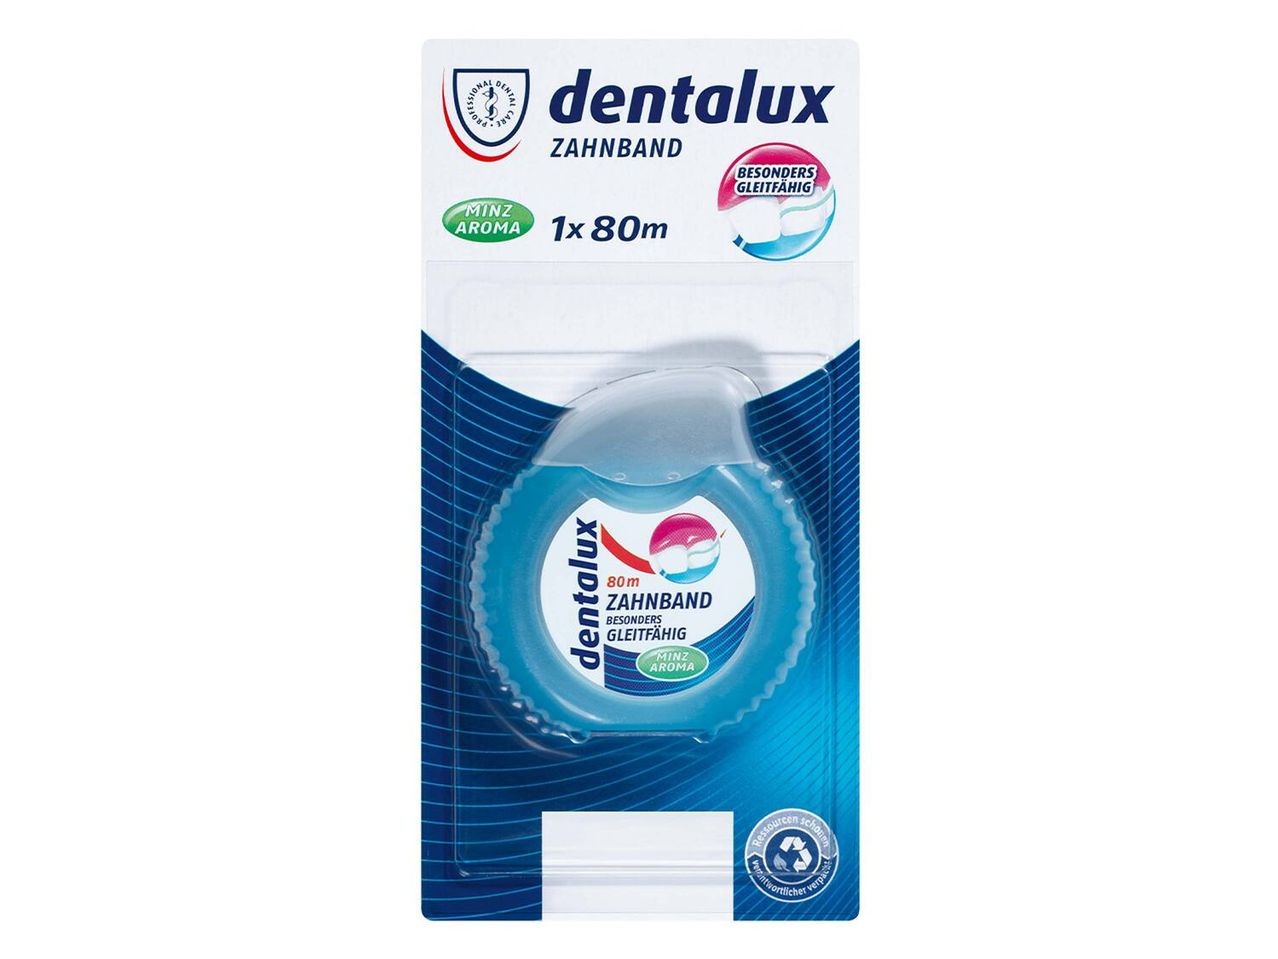 Gehe zu Vollbildansicht: Dentalux Zahnband besonders gleitfähig, Minzaroma - Bild 3